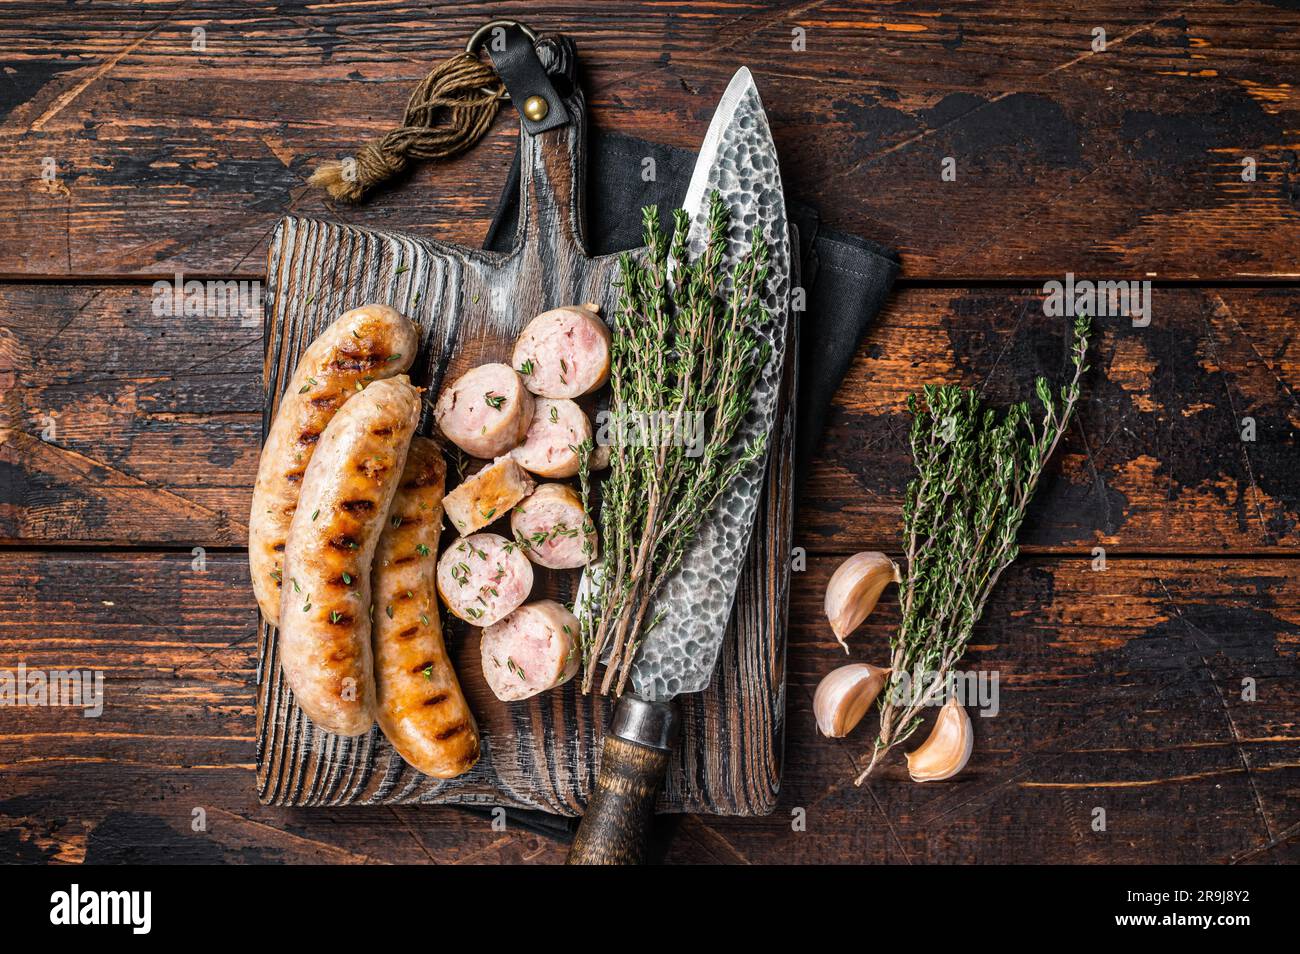 Tranches de saucisses de viande de porc grillée sur une table de service en bois. Arrière-plan en bois. Vue de dessus. Banque D'Images